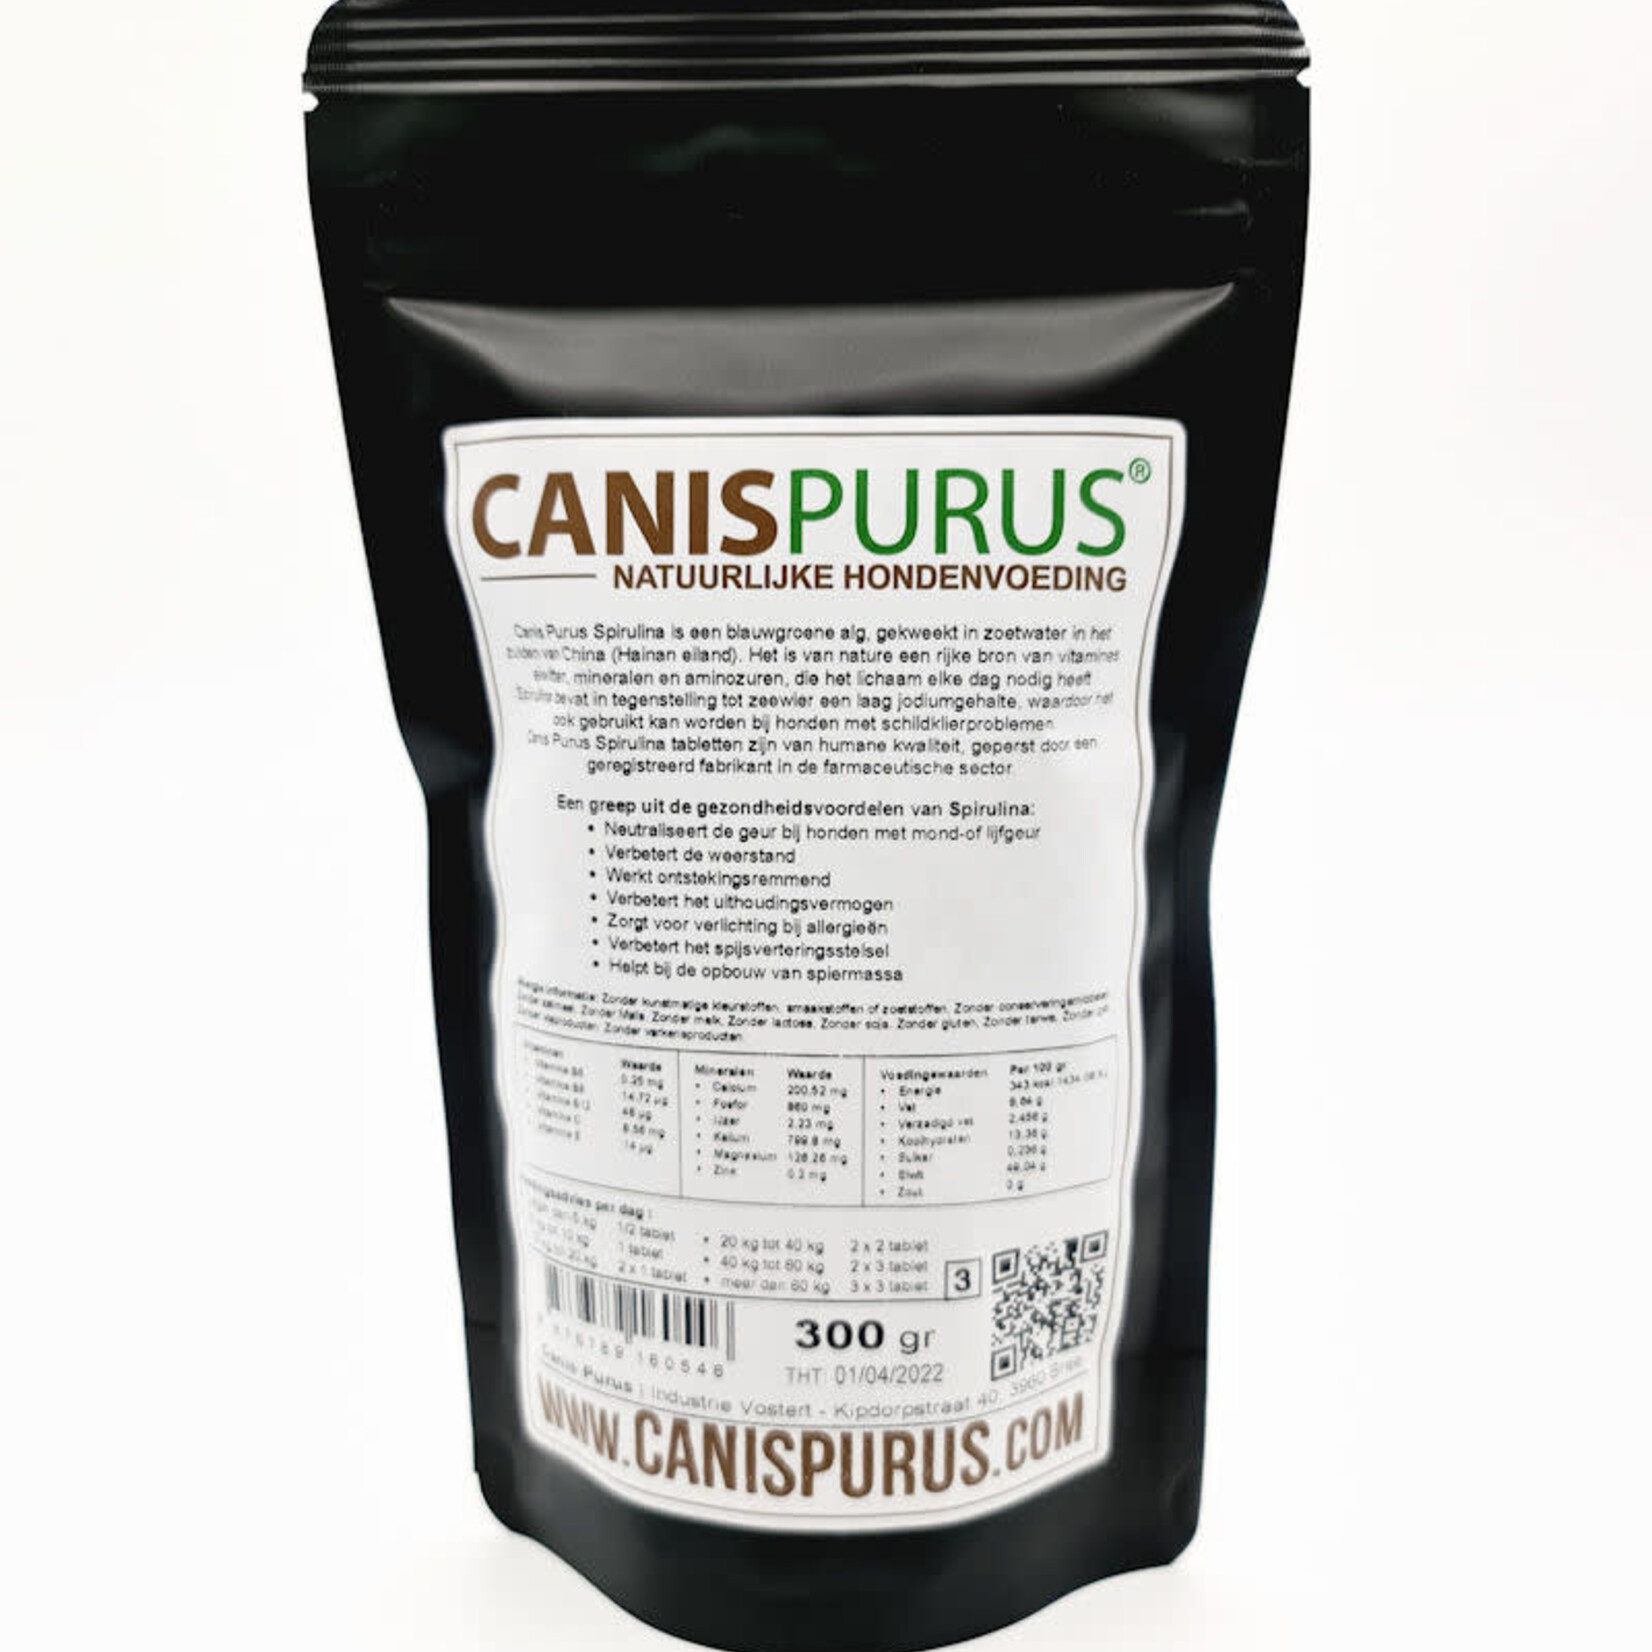 Canis Purus Canis Purus spirulina tabletten